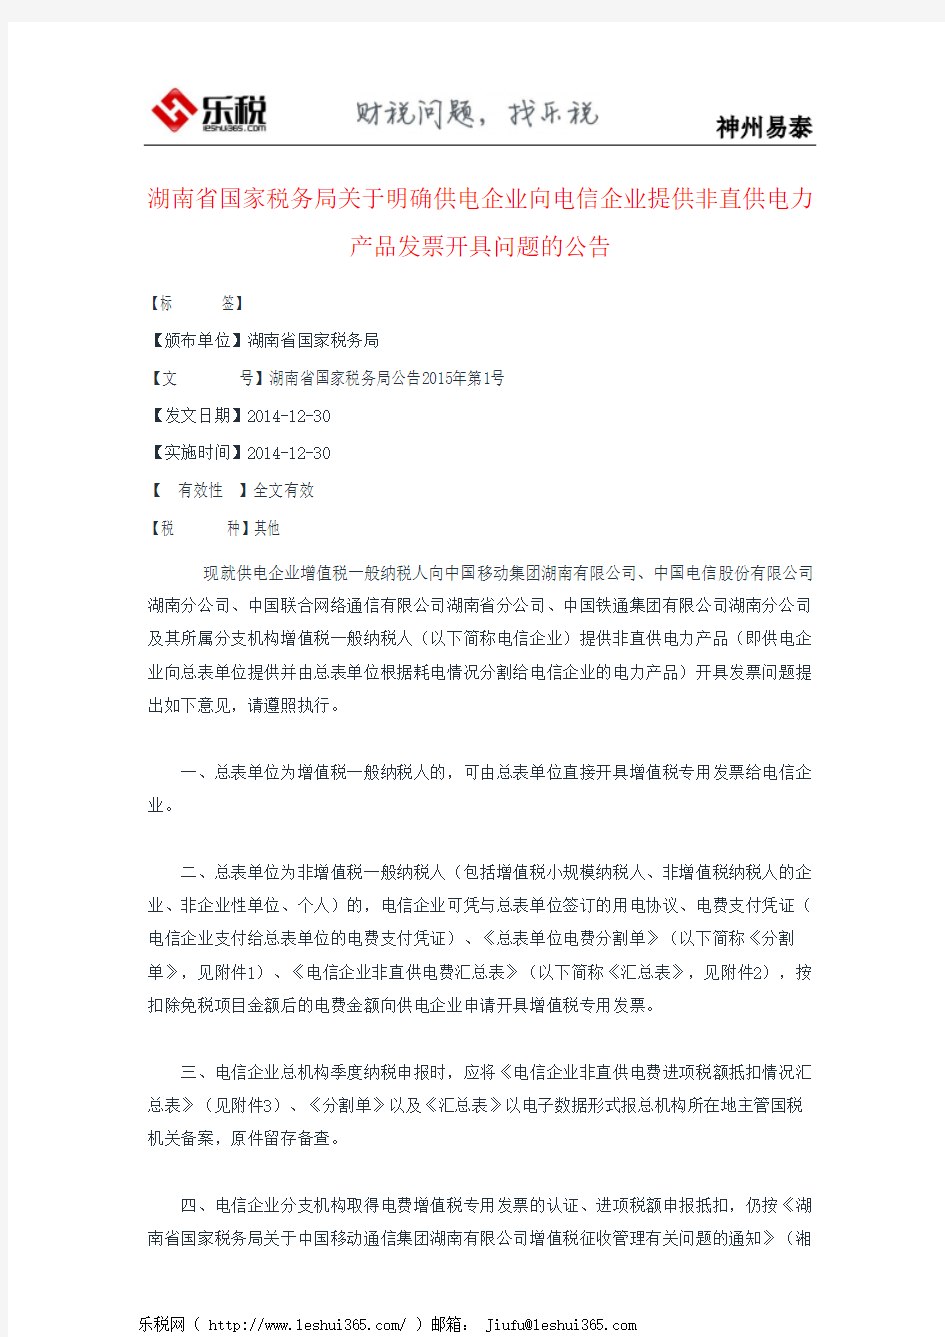 湖南省国家税务局关于明确供电企业向电信企业提供非直供电力产品